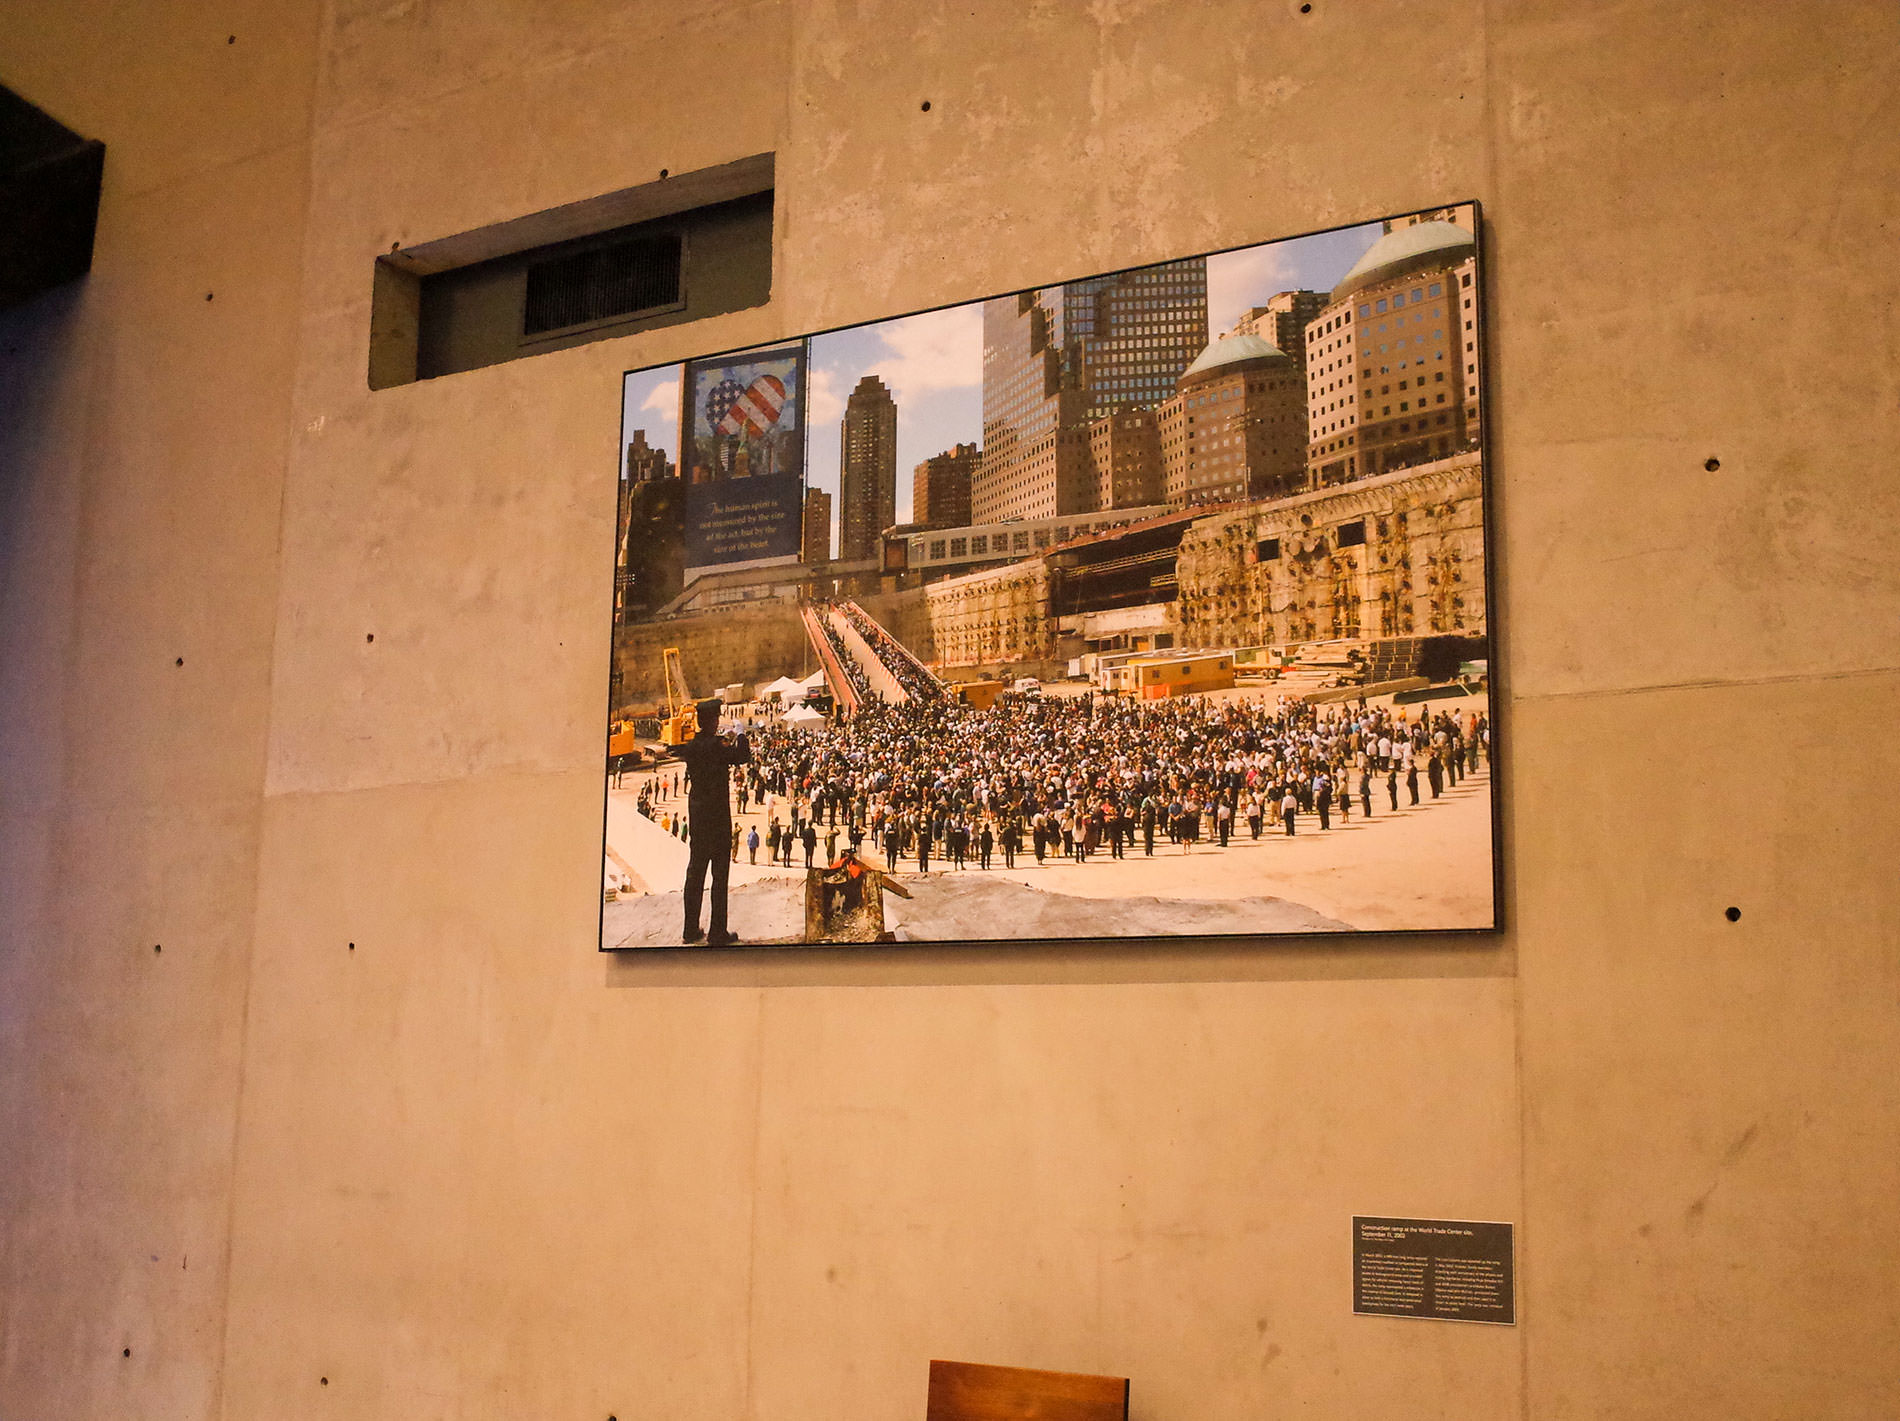 ナショナル セプテンバー 11 メモリアル & ミュージアム | グランド ゼロ / National September 11 Memorial & Museum | Ground Zero / ニューヨーク・ボストン旅行 2019